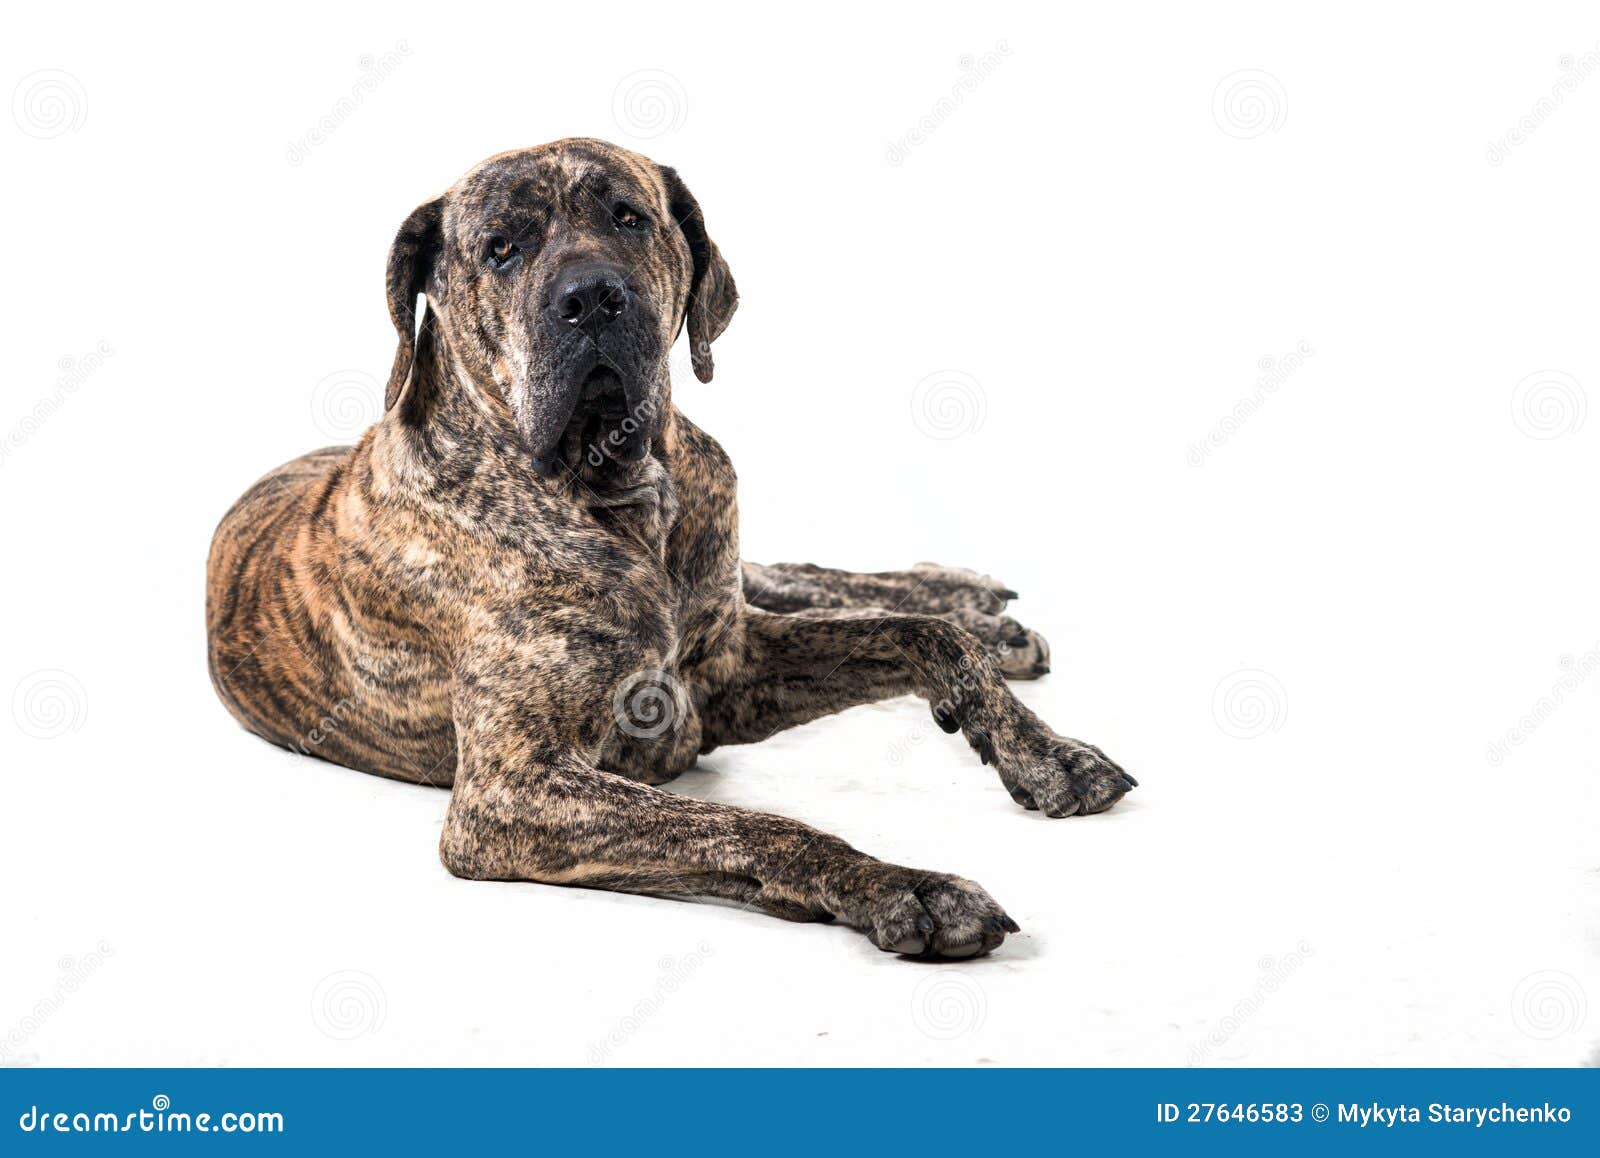 big brazilan fila dog lying